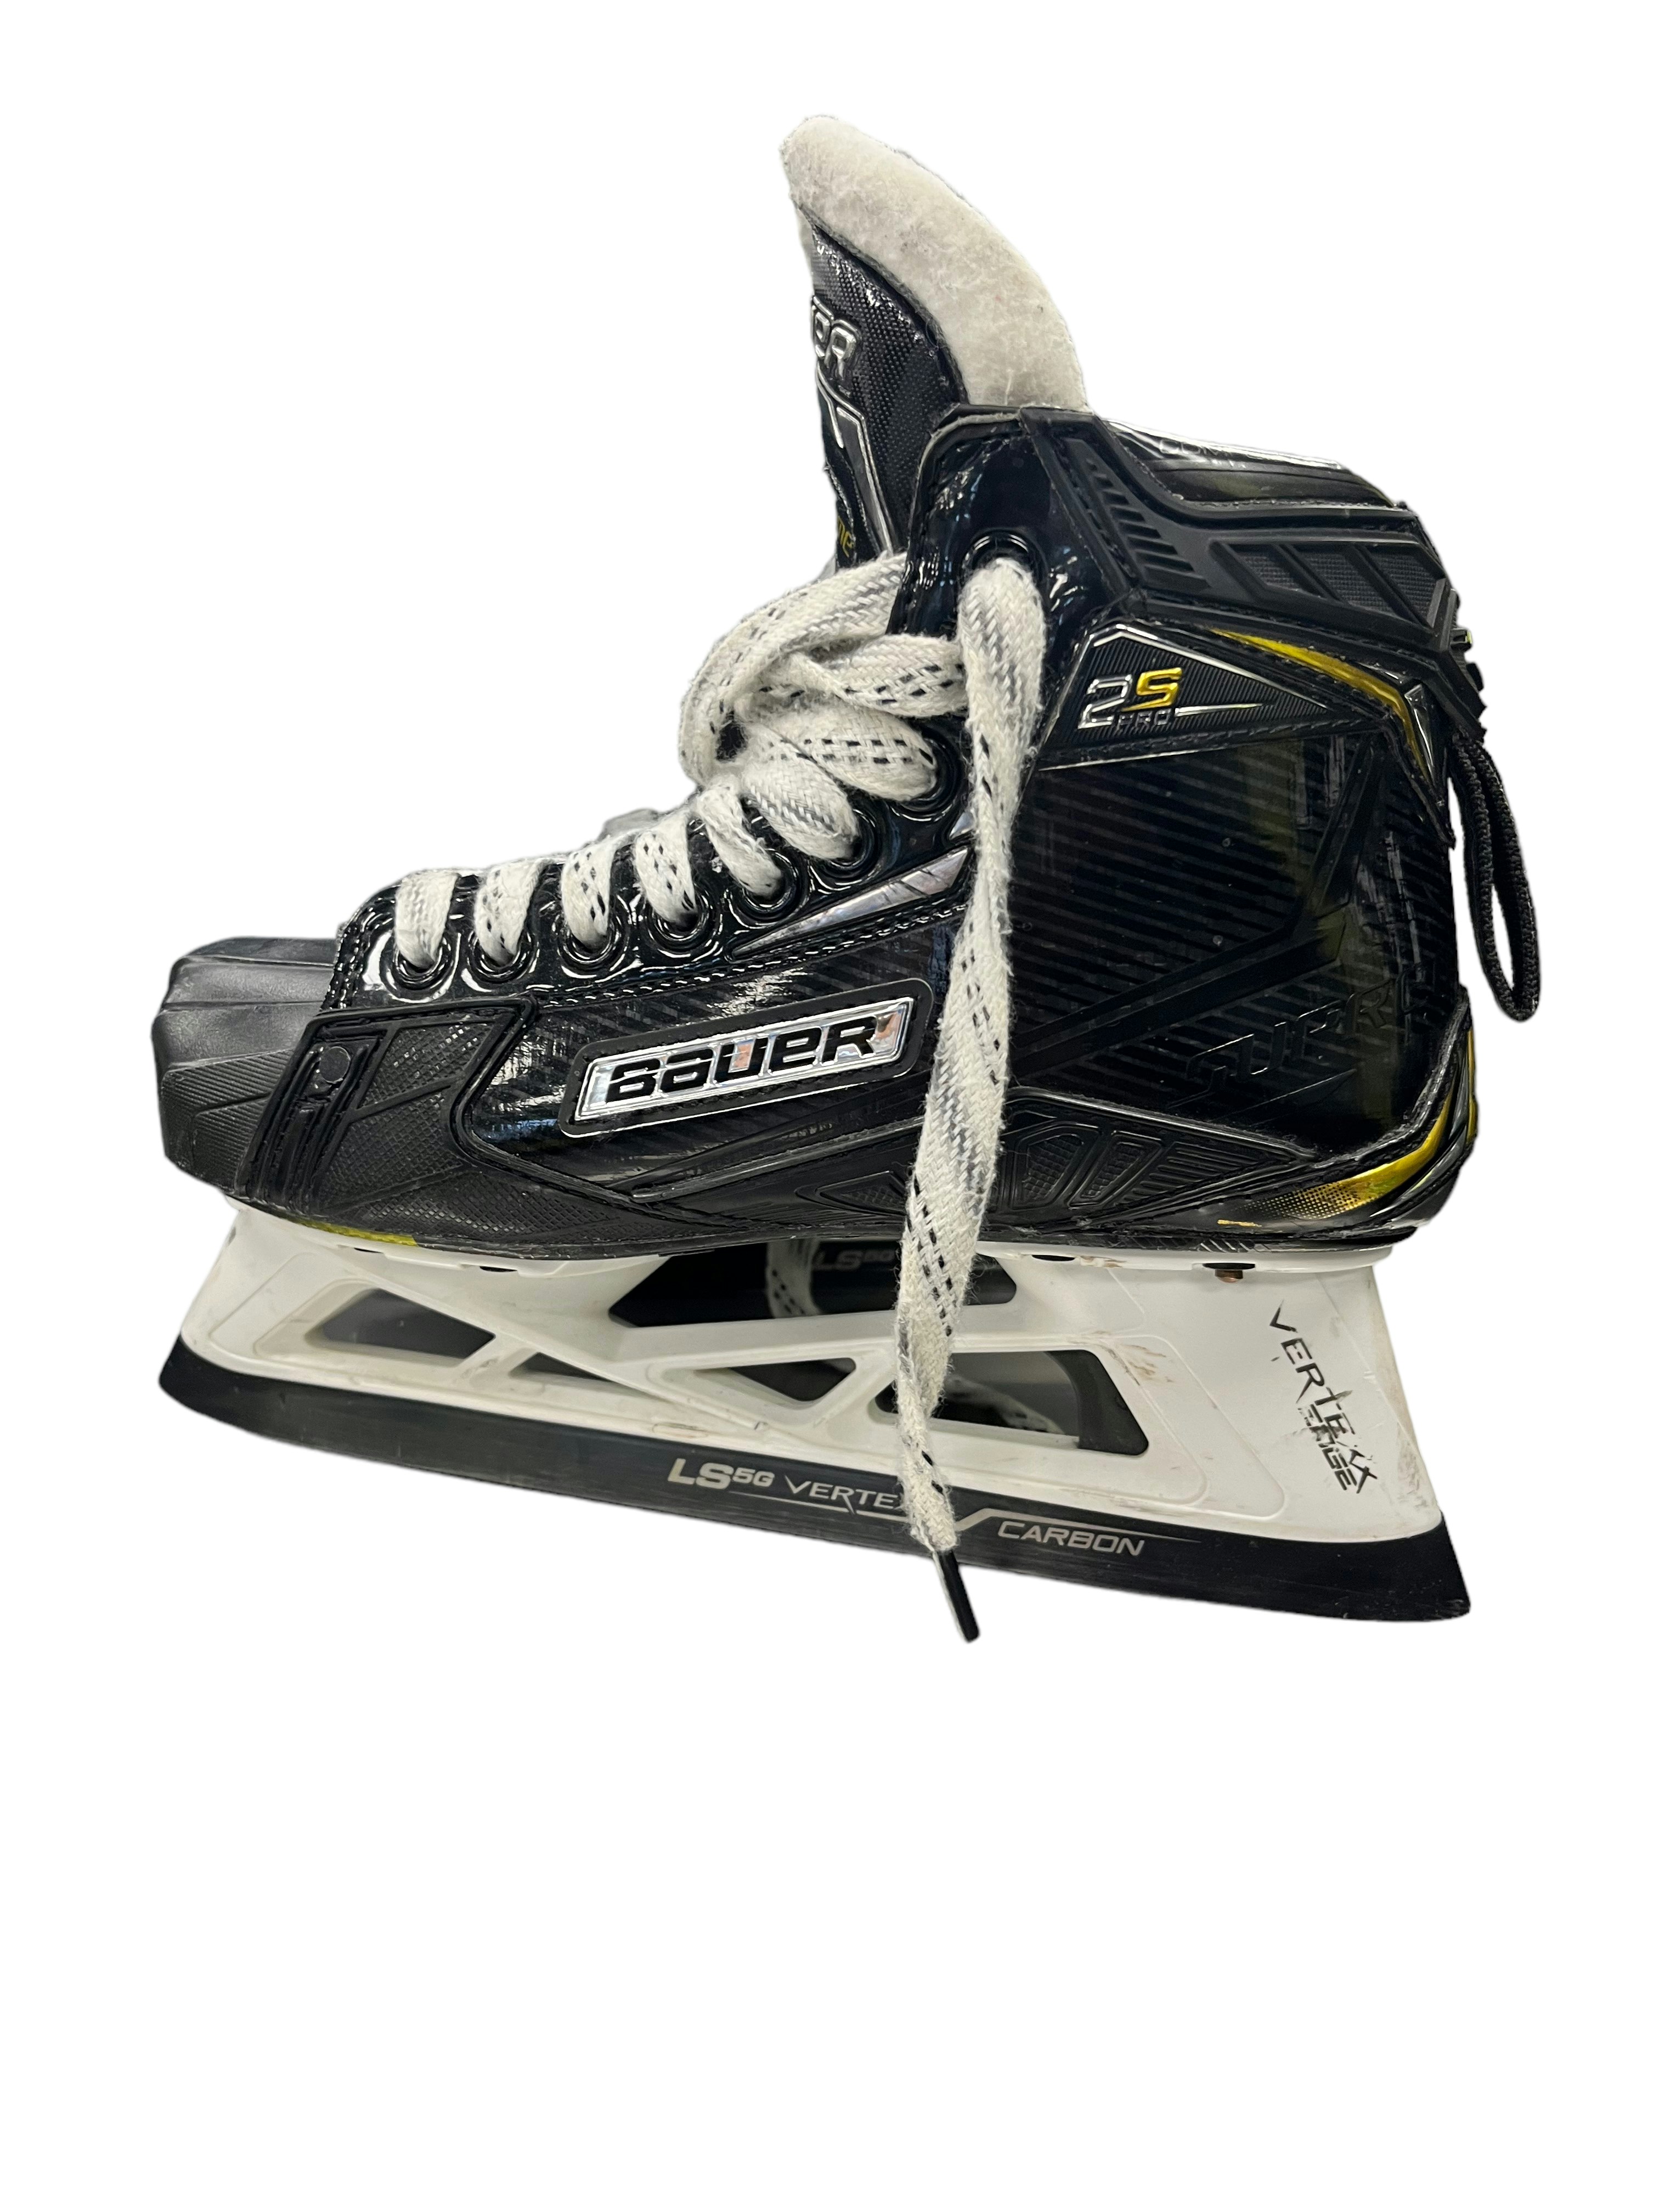 used hockey skates online